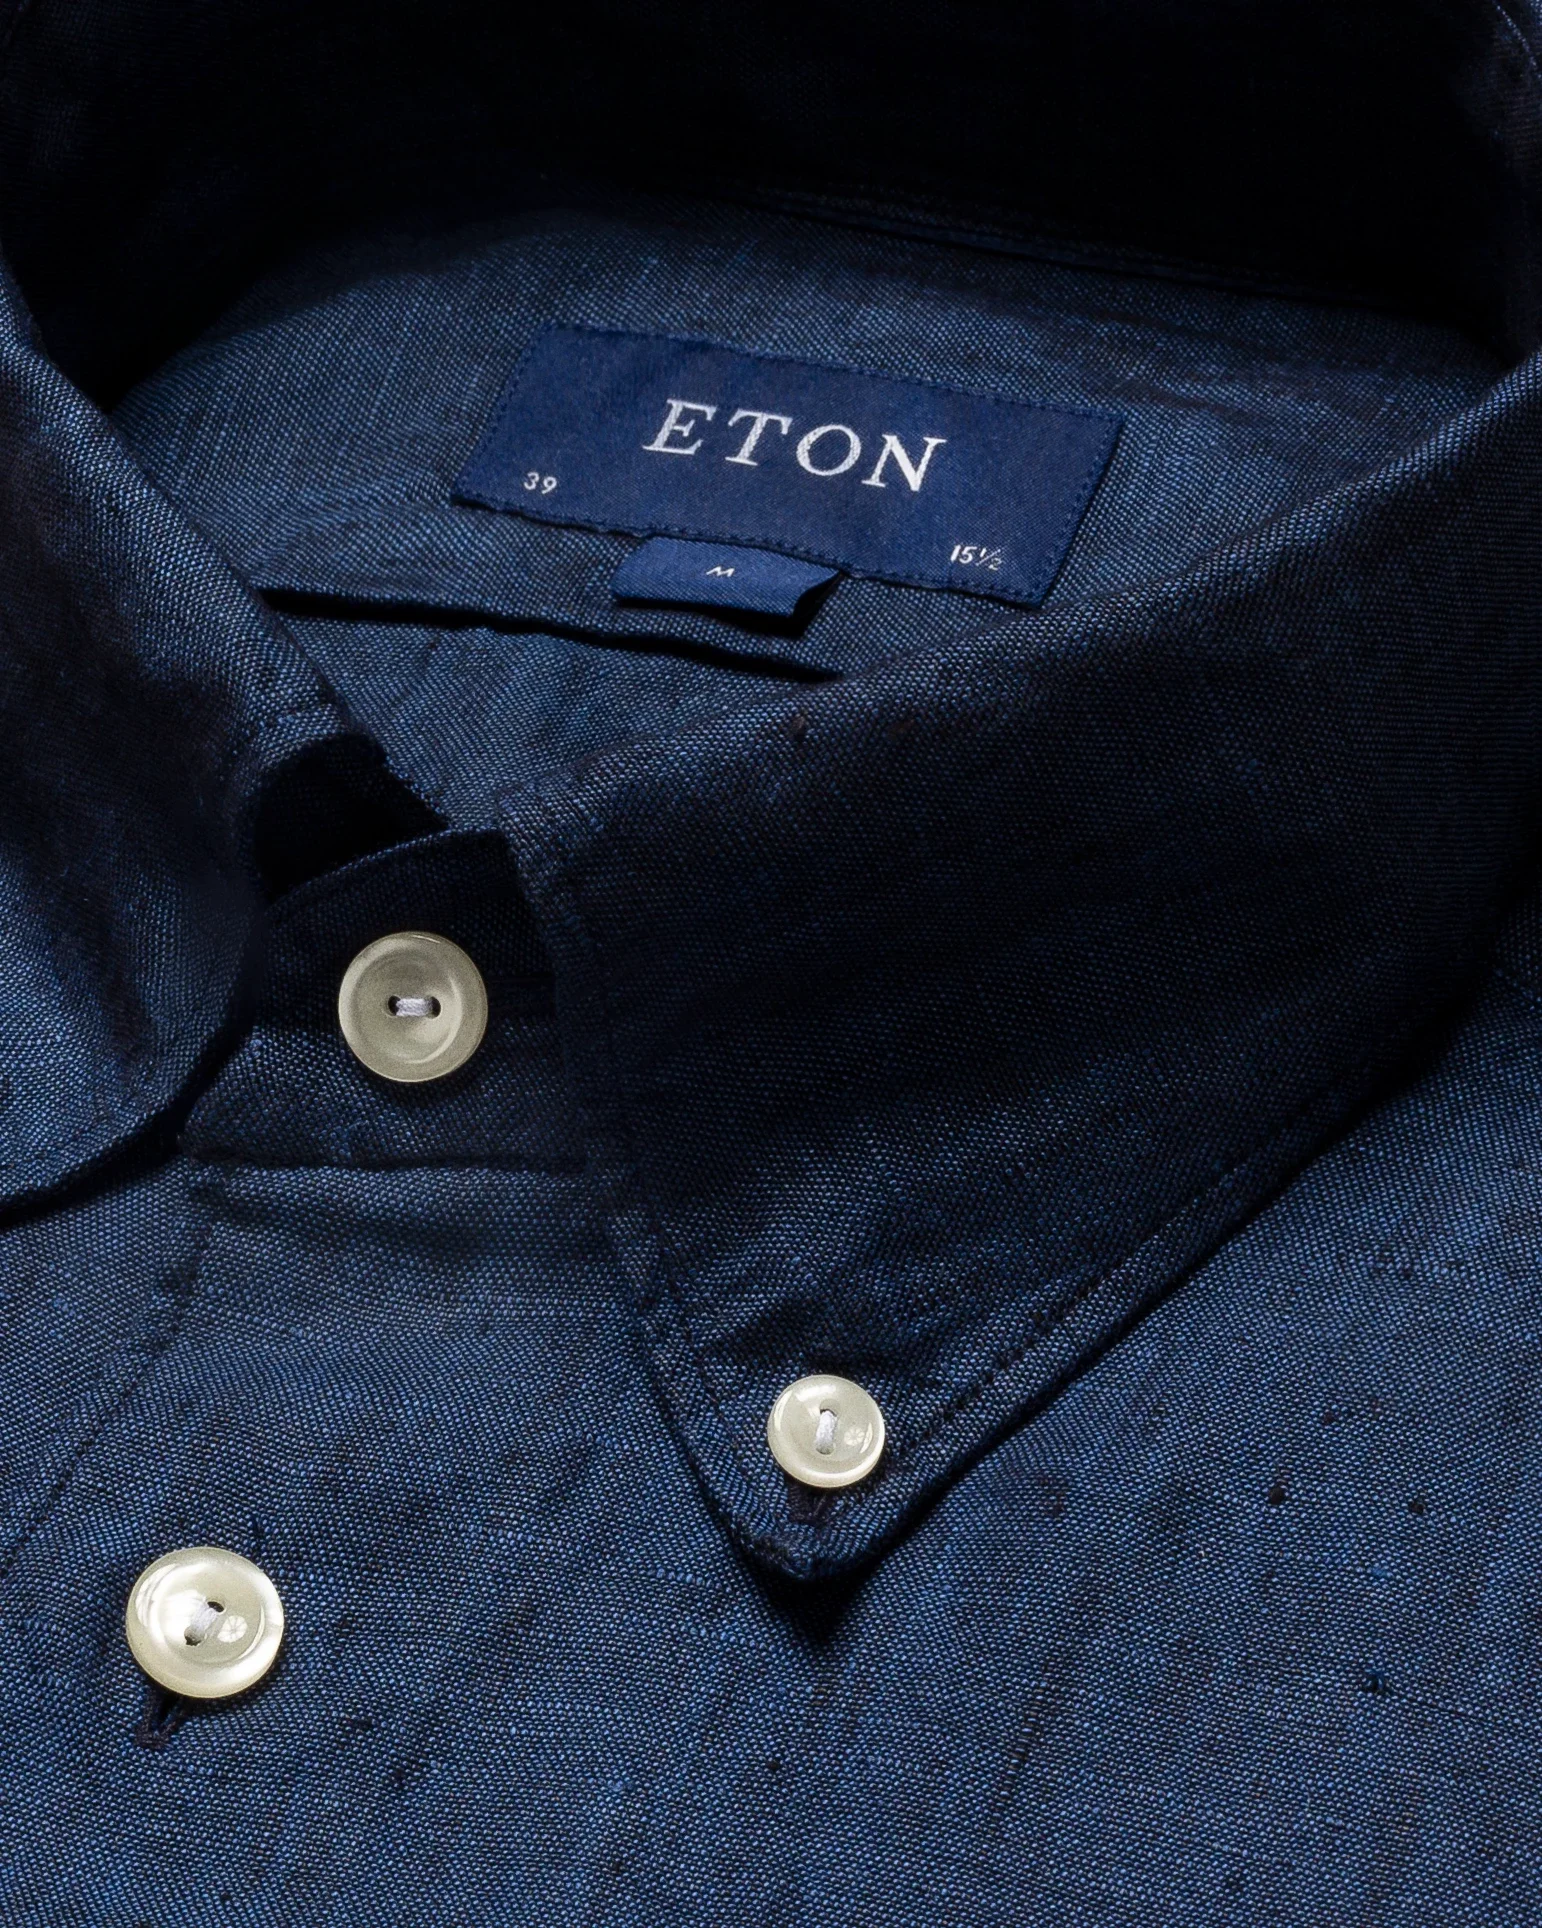 Eton - blue linen shirt short sleeve button down